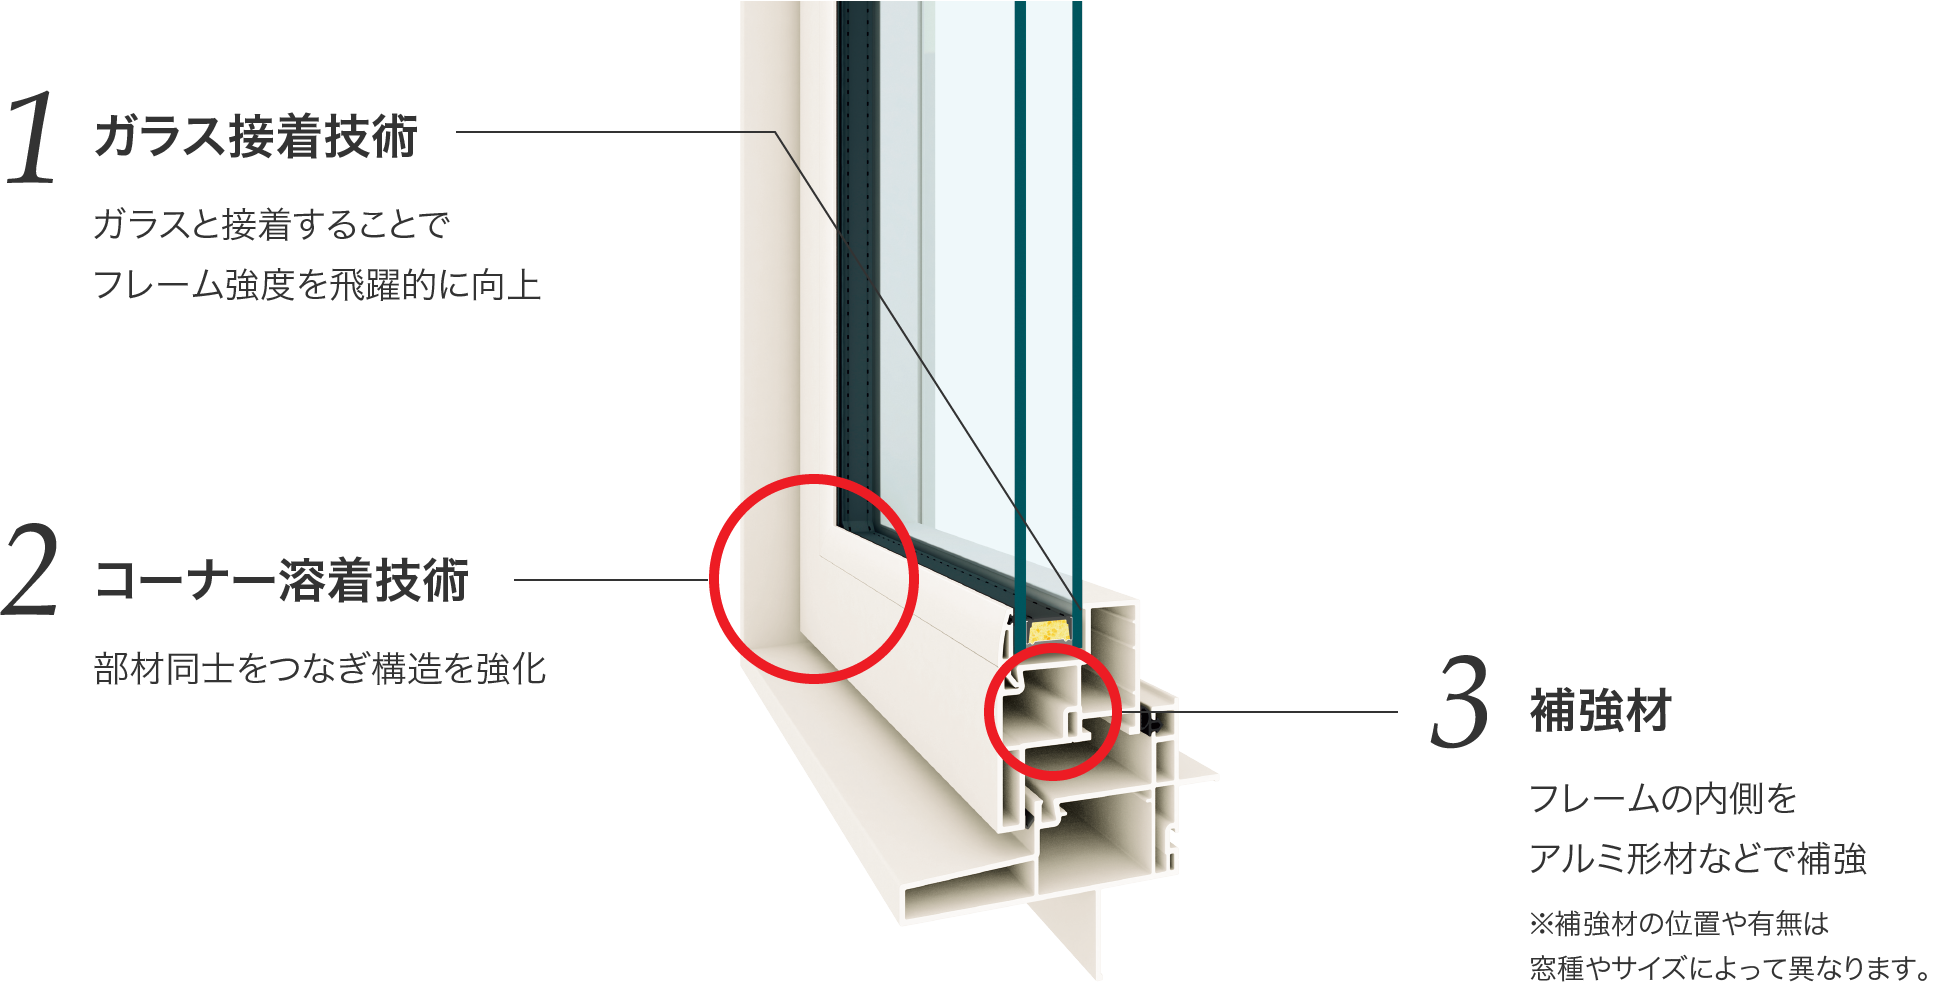 1ガラス接着技術 ガラスと接着することでフレーム強度を飛躍的に向上　2コーナー溶着技術 部材同士をつなぎ構造を強化　3補強材 フレームの内側を アルミ形材などで補強 ※補強材の位置や有無は窓種やサイズによって異なります。